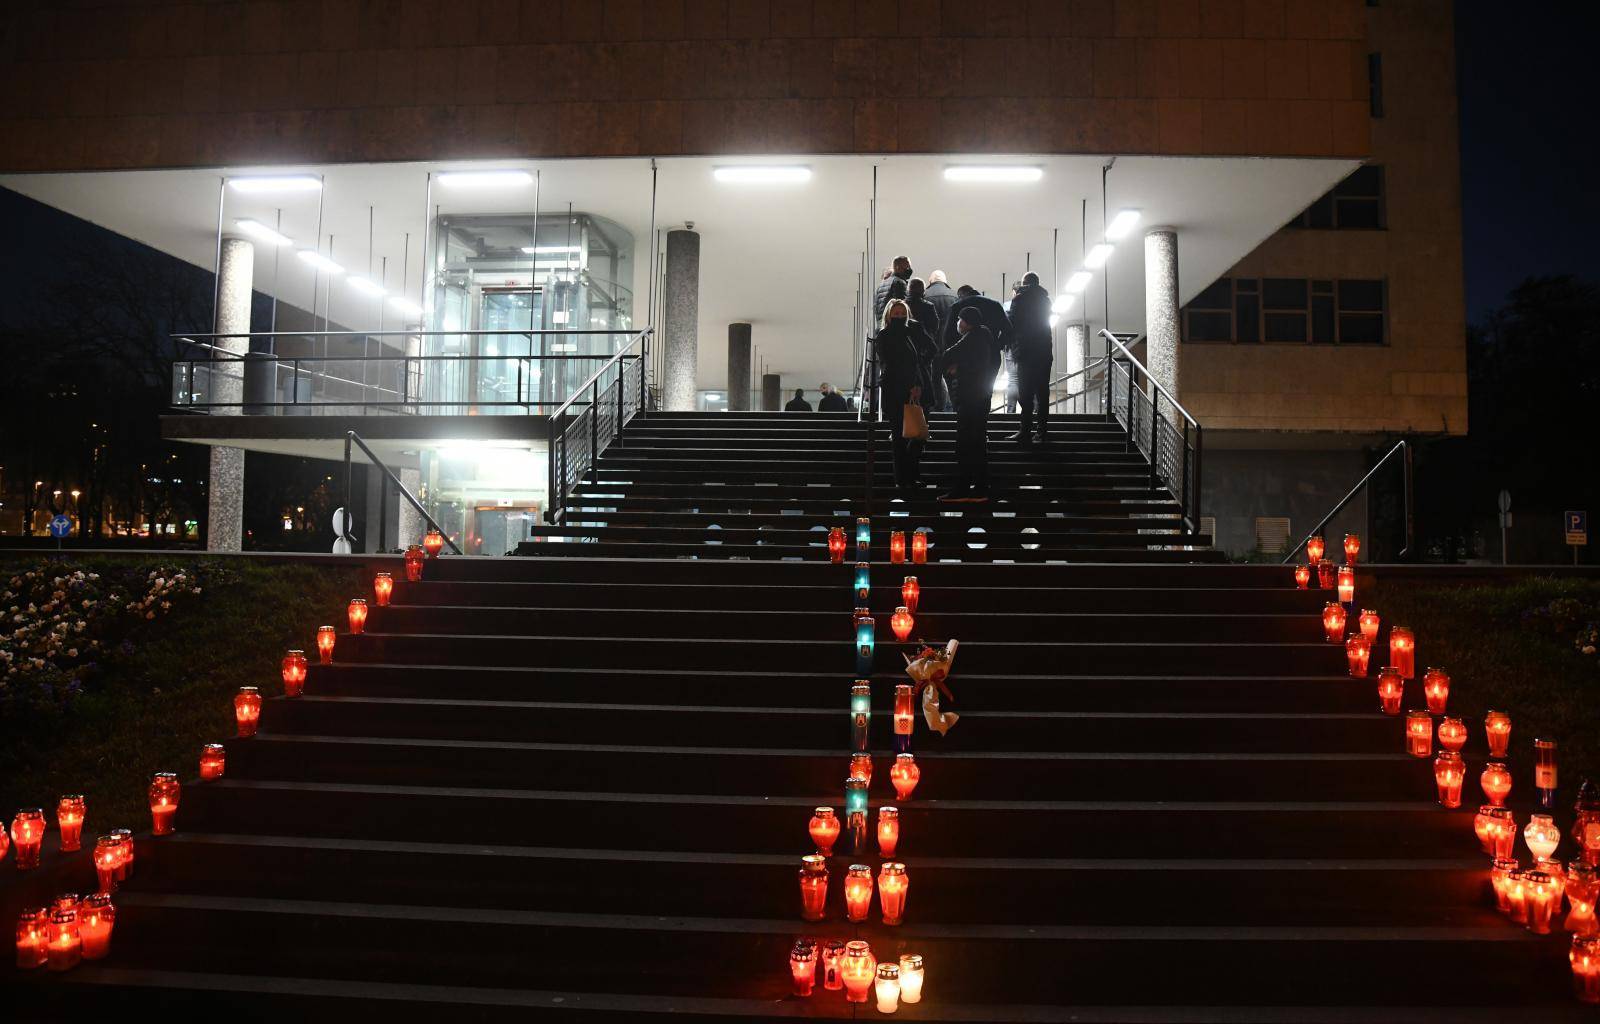 Fontane svijetle u čast Milana Bandića, ljudi ostavljaju svijeće